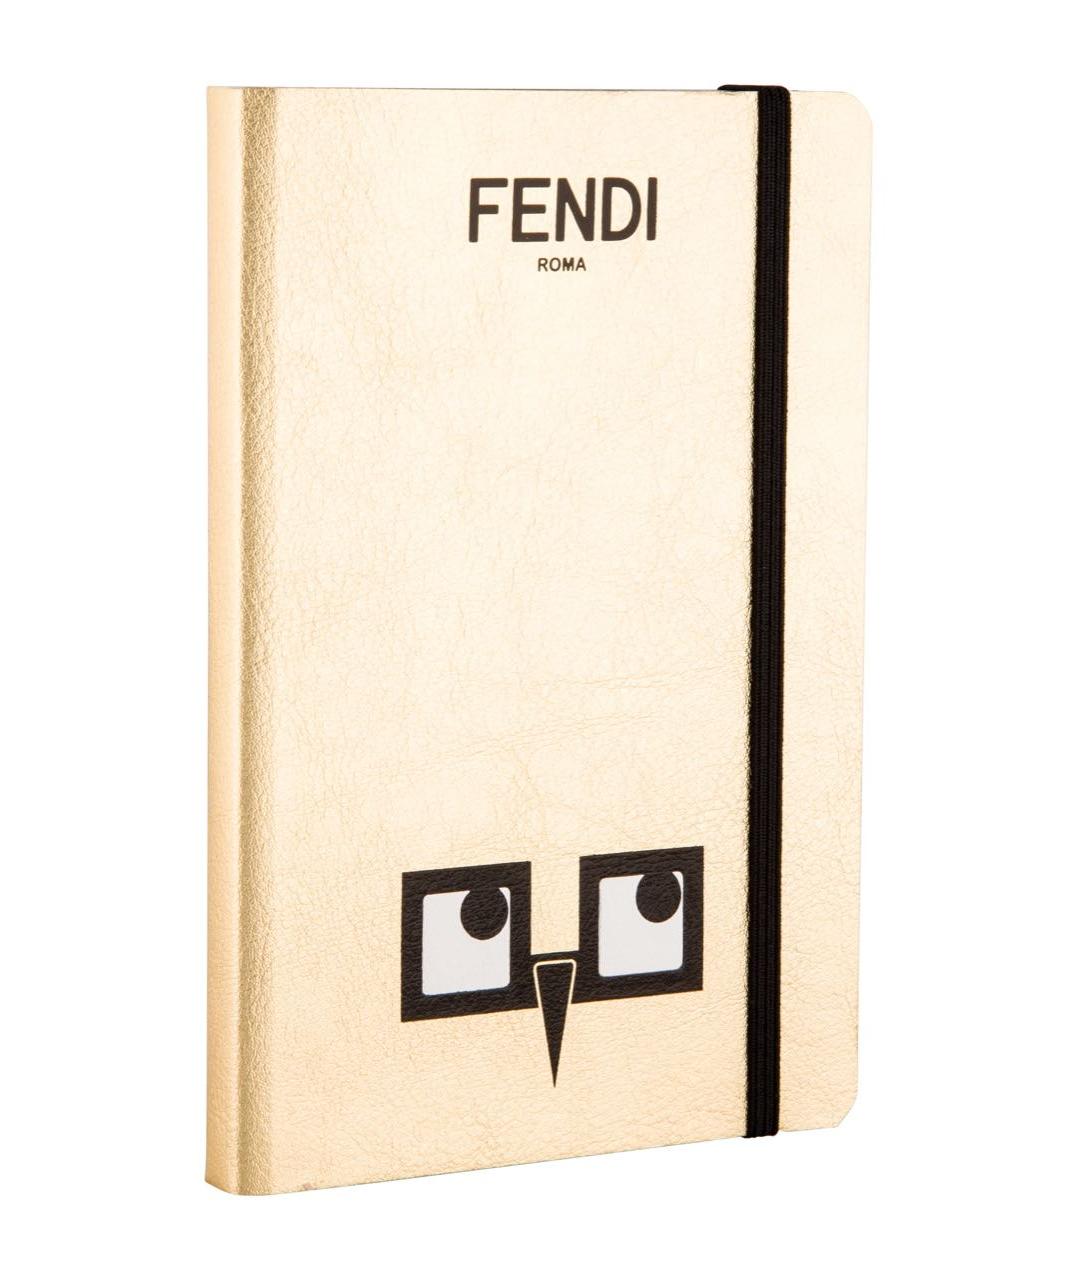 FENDI Книга, фото 2